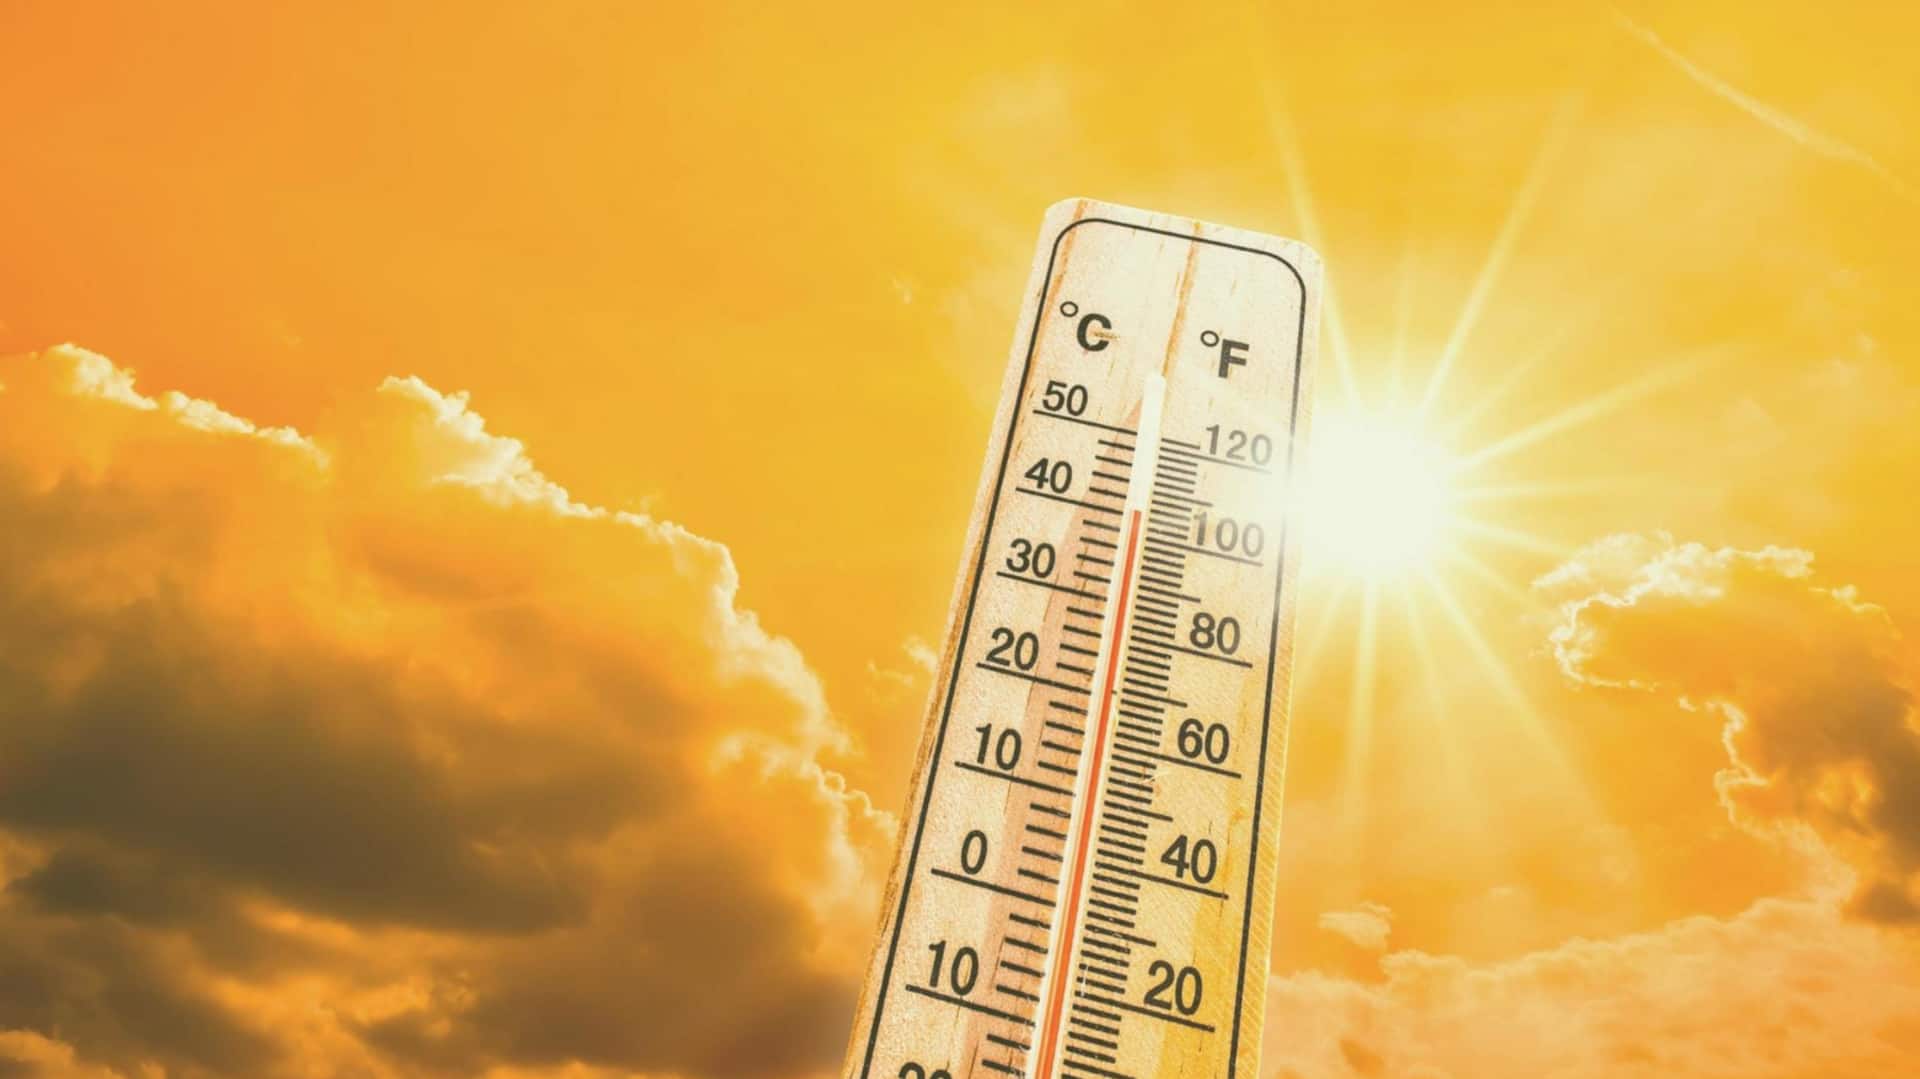 नासा ने बढ़ती गर्मी पर दी चेतावनी, लगातार पांचवें साल बढ़ा जुलाई का तापमान